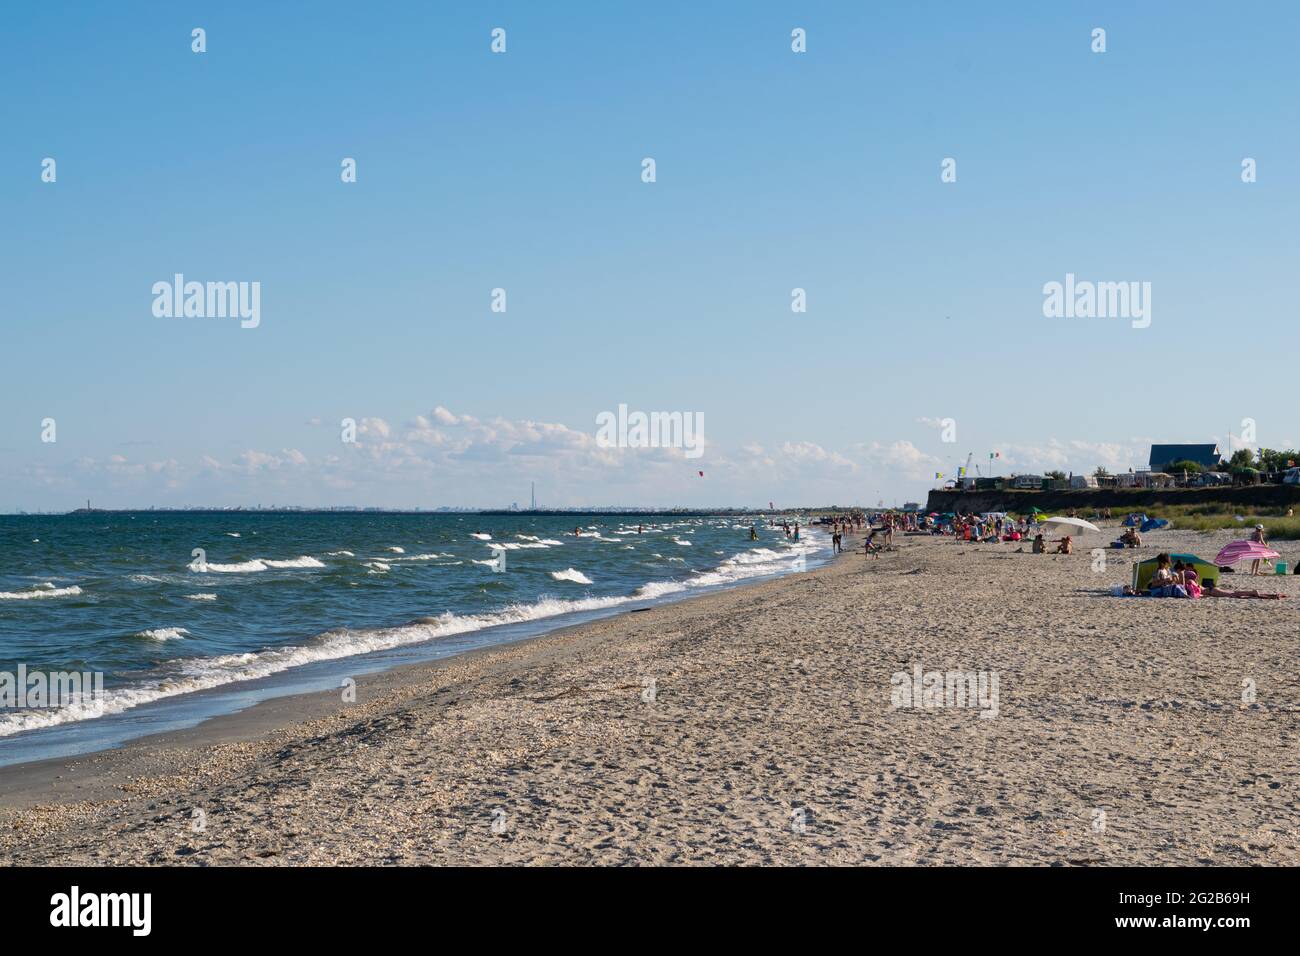 Corbu, Constanta, Romania - 03 agosto 2020: turista che si diverte sulla spiaggia di Corbu, Romania. Foto Stock